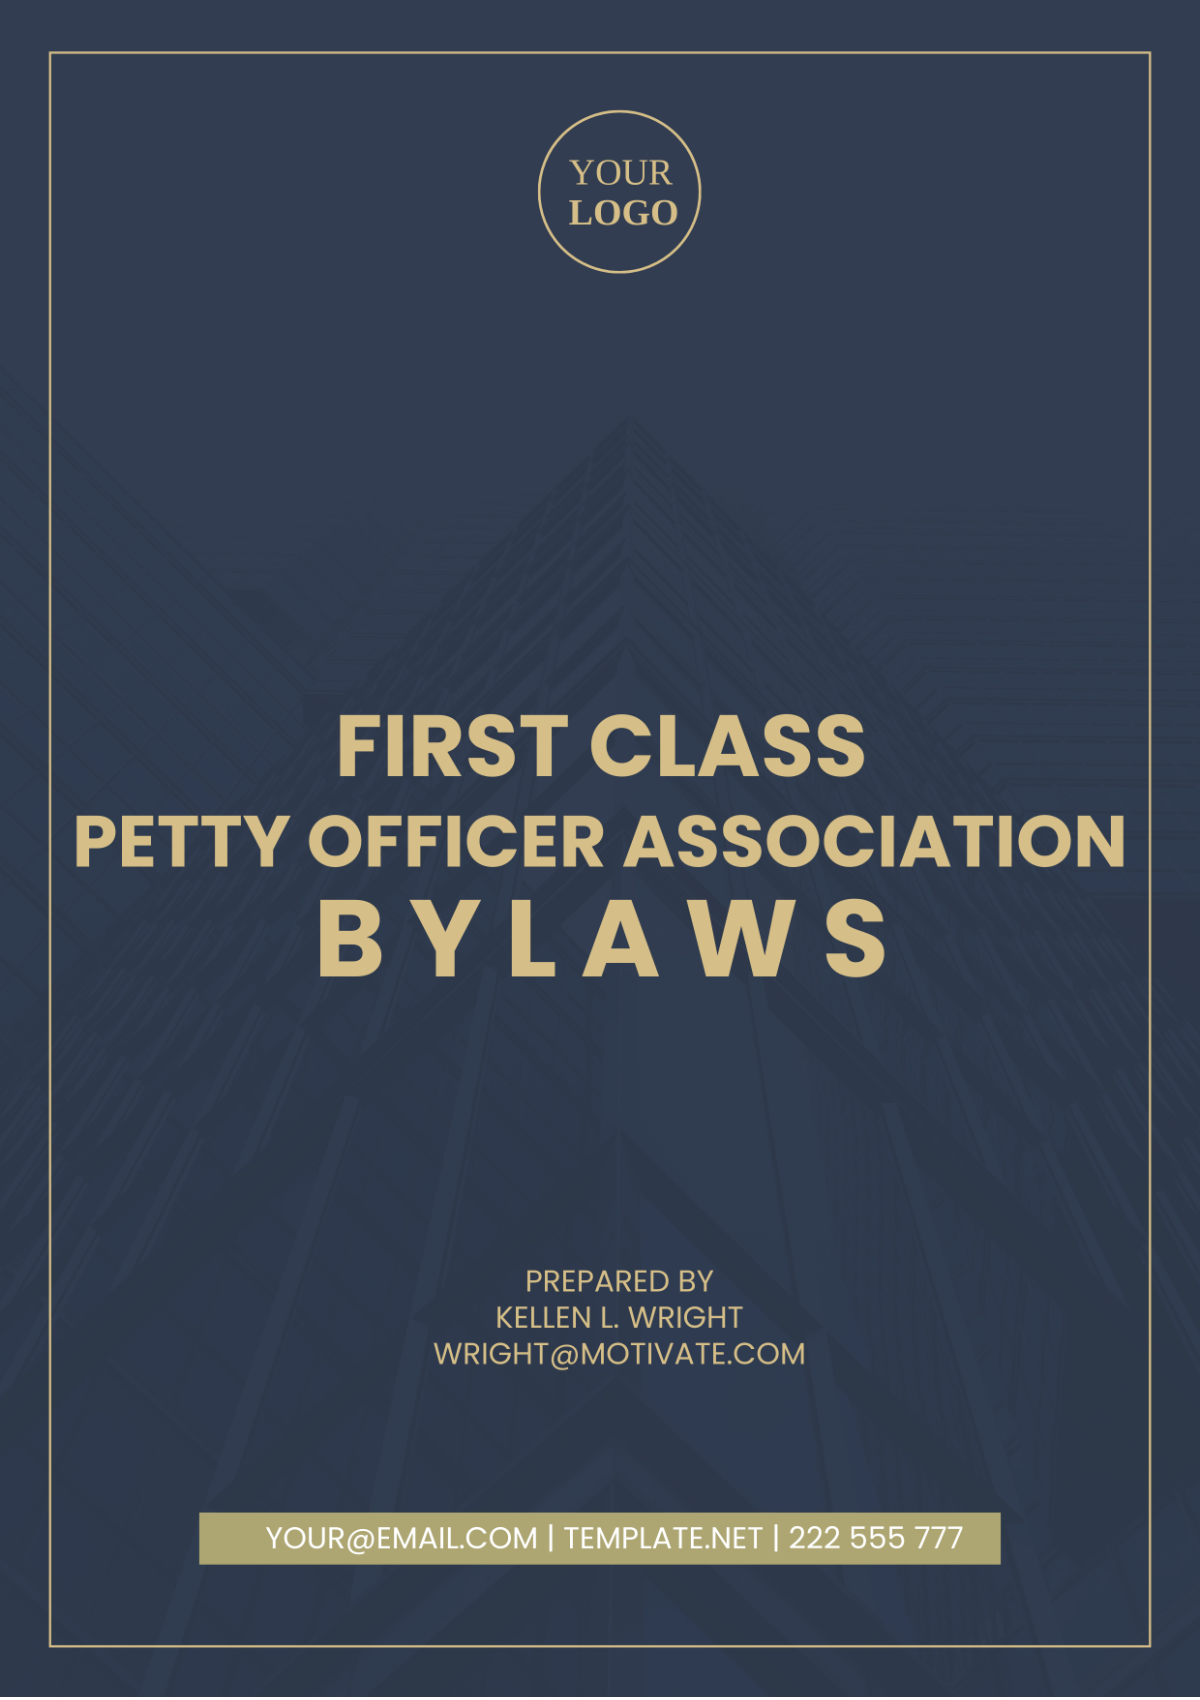 First Class Petty Officer Association Bylaws Template